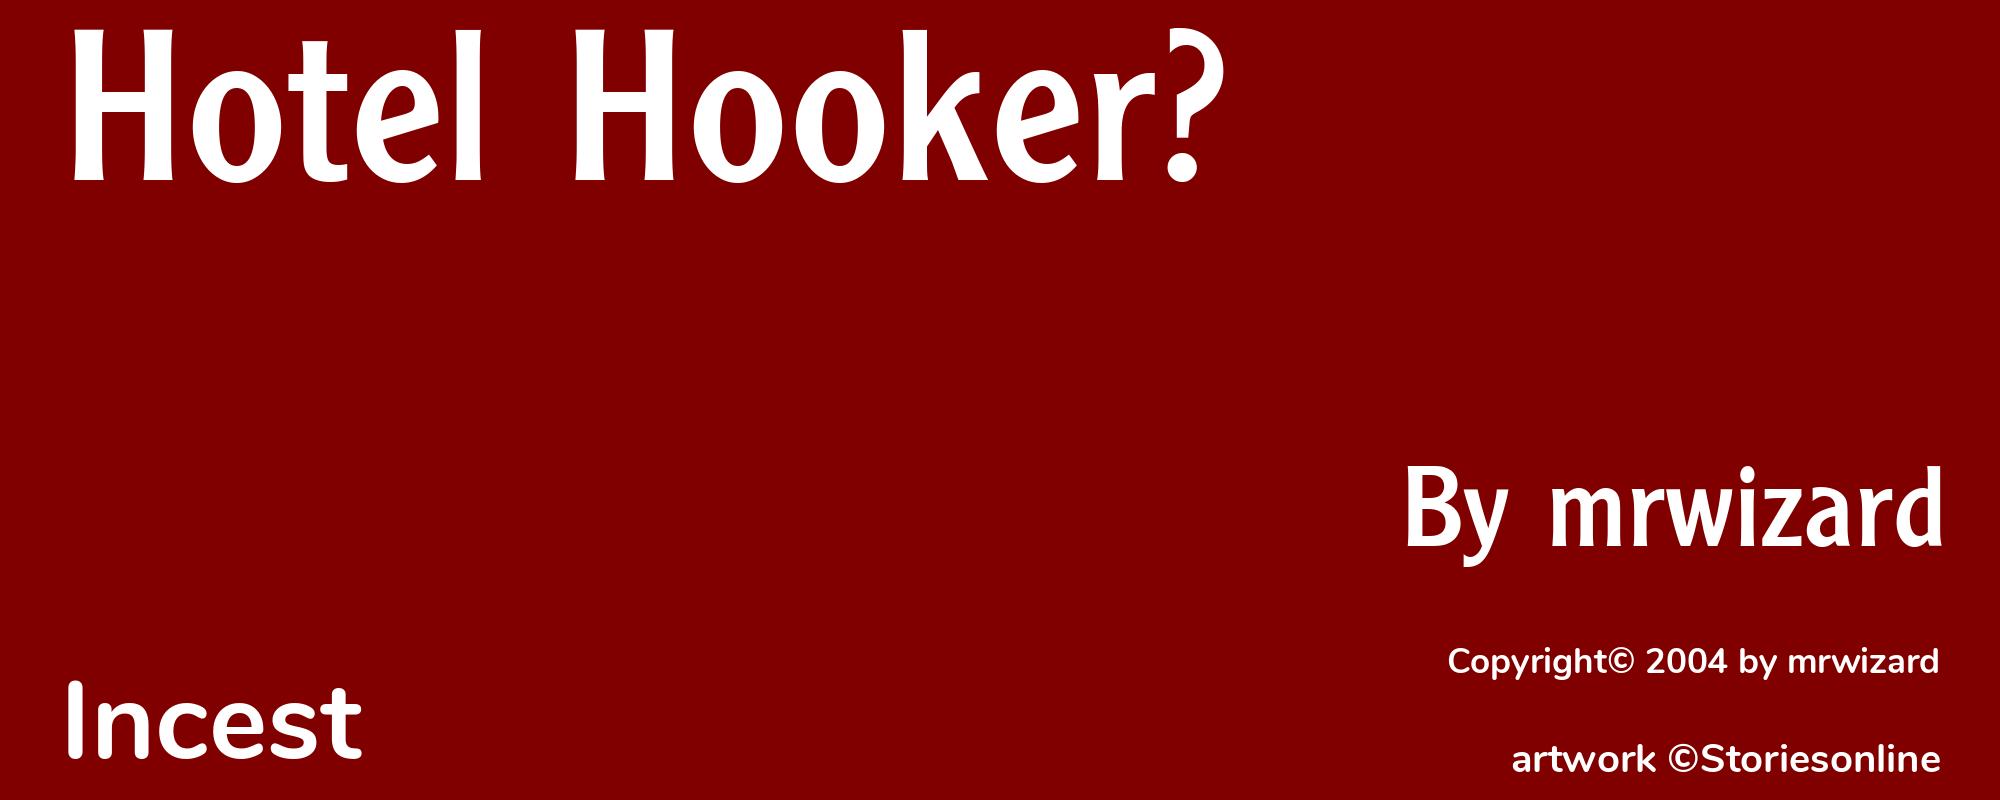 Hotel Hooker? - Cover